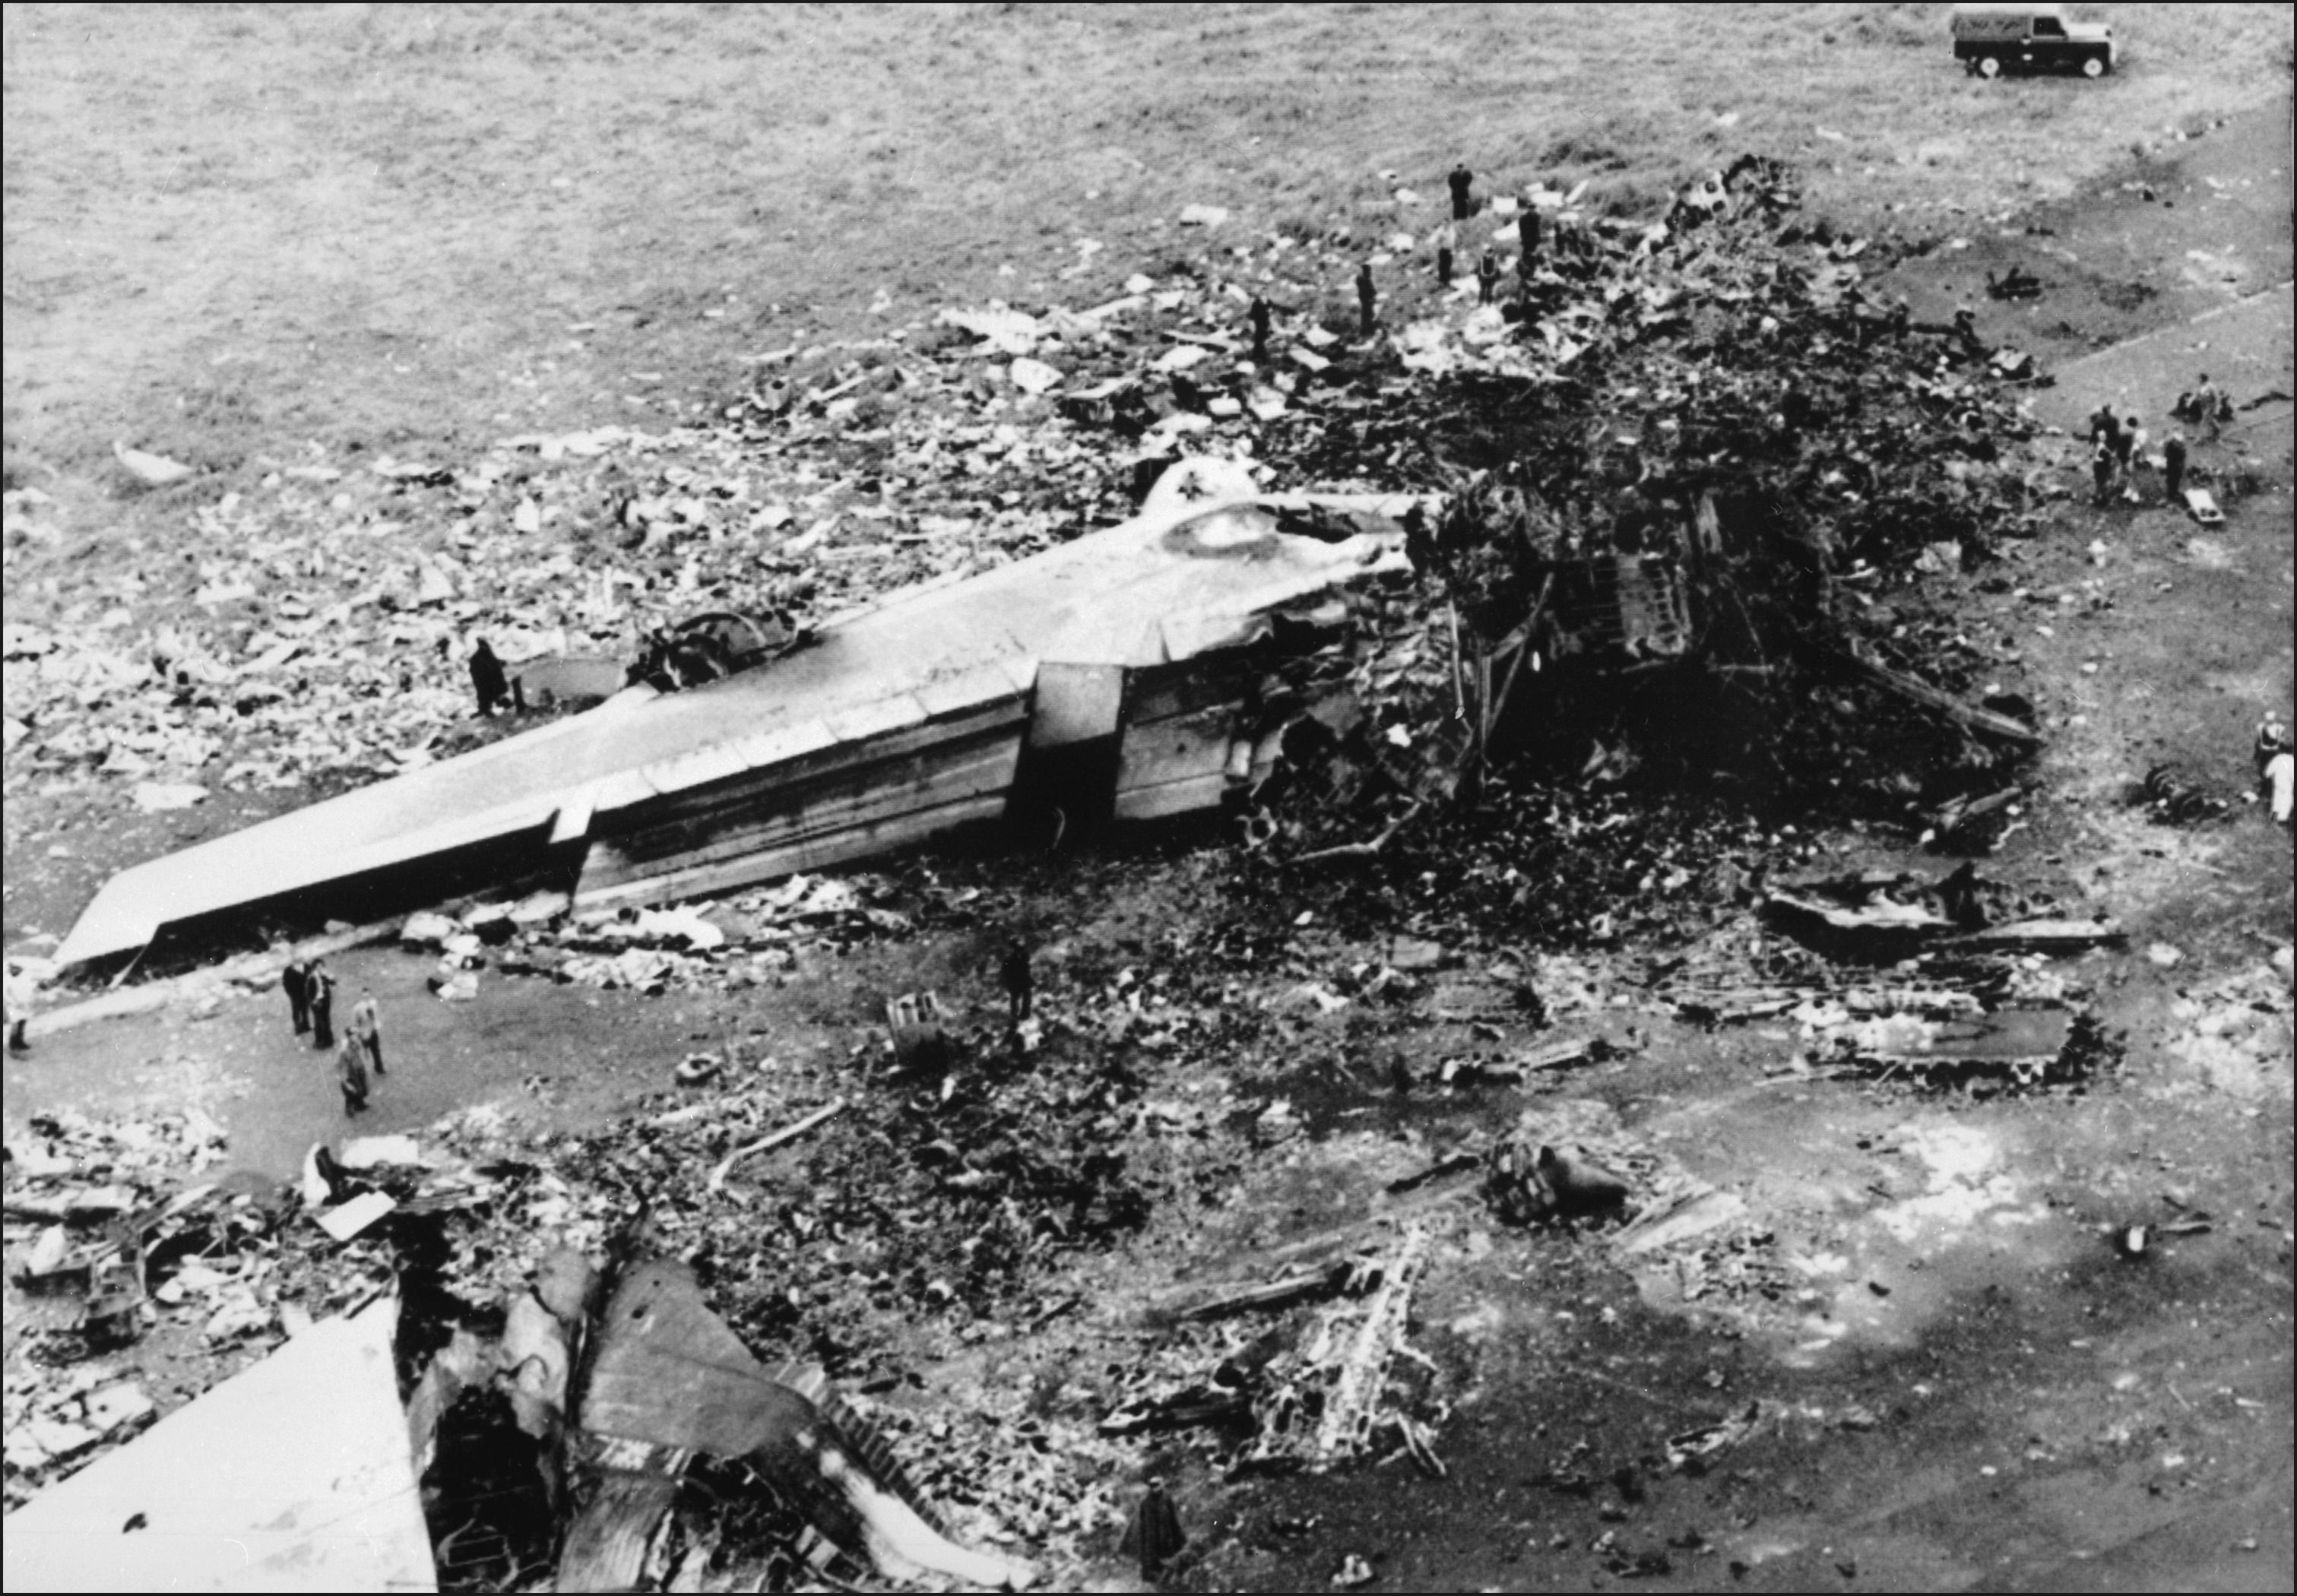 Das ausgebrannte Wrack der Pan Am 1736 liegt auf der Landebahn von Los Rodeos